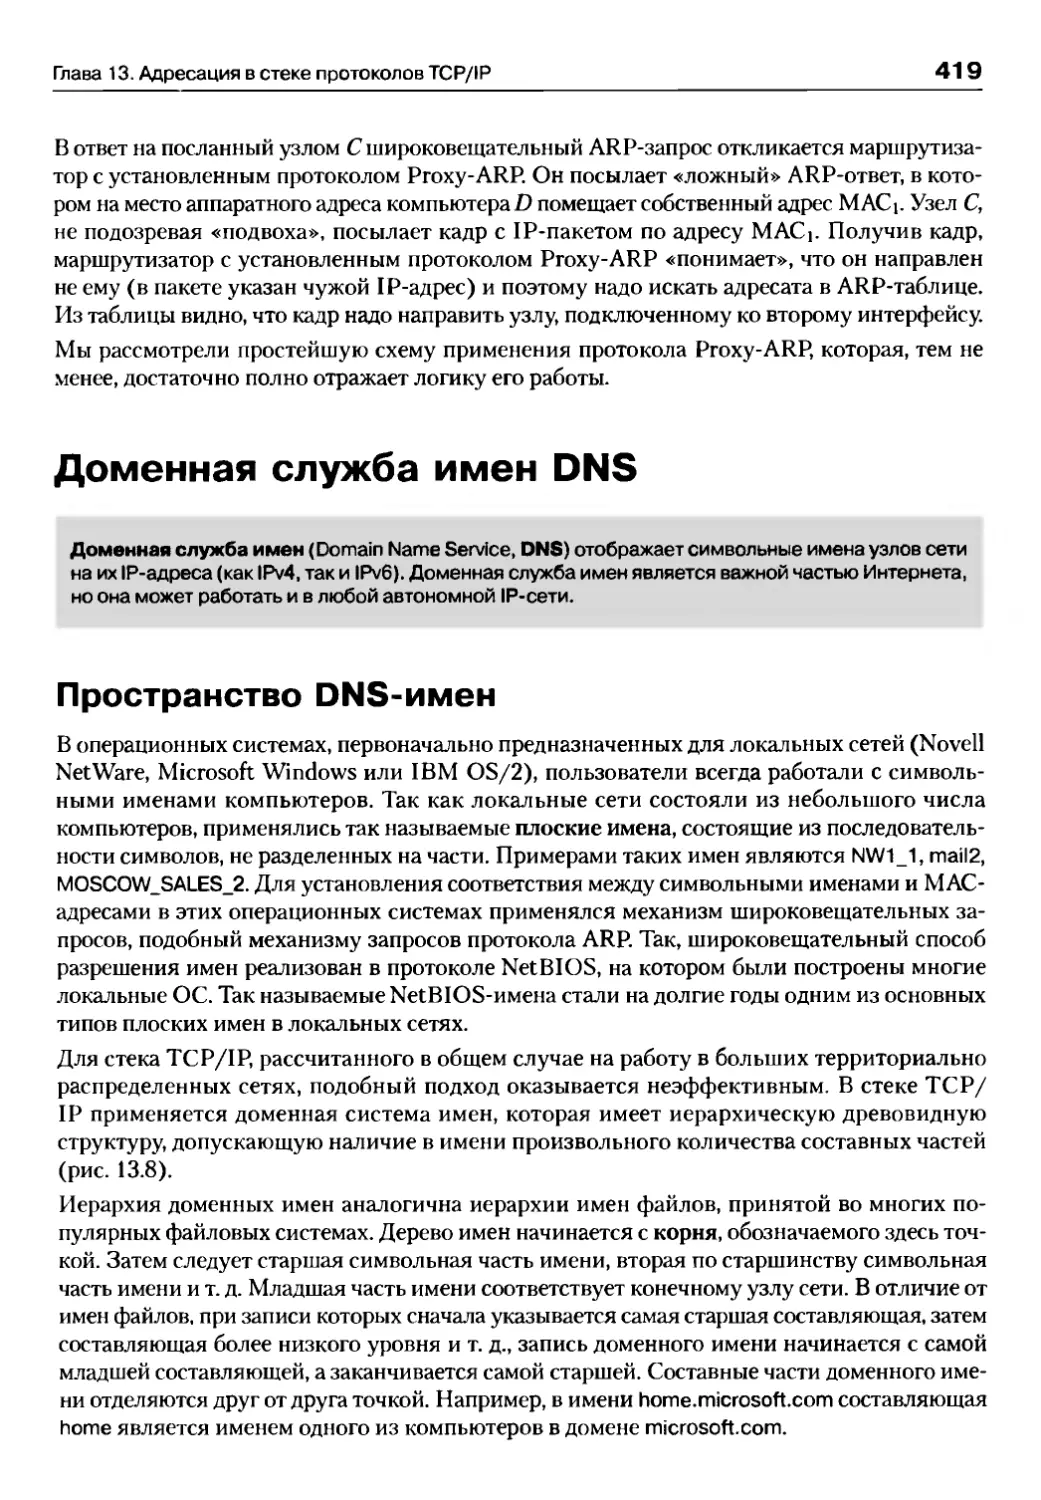 Доменная служба имен DNS